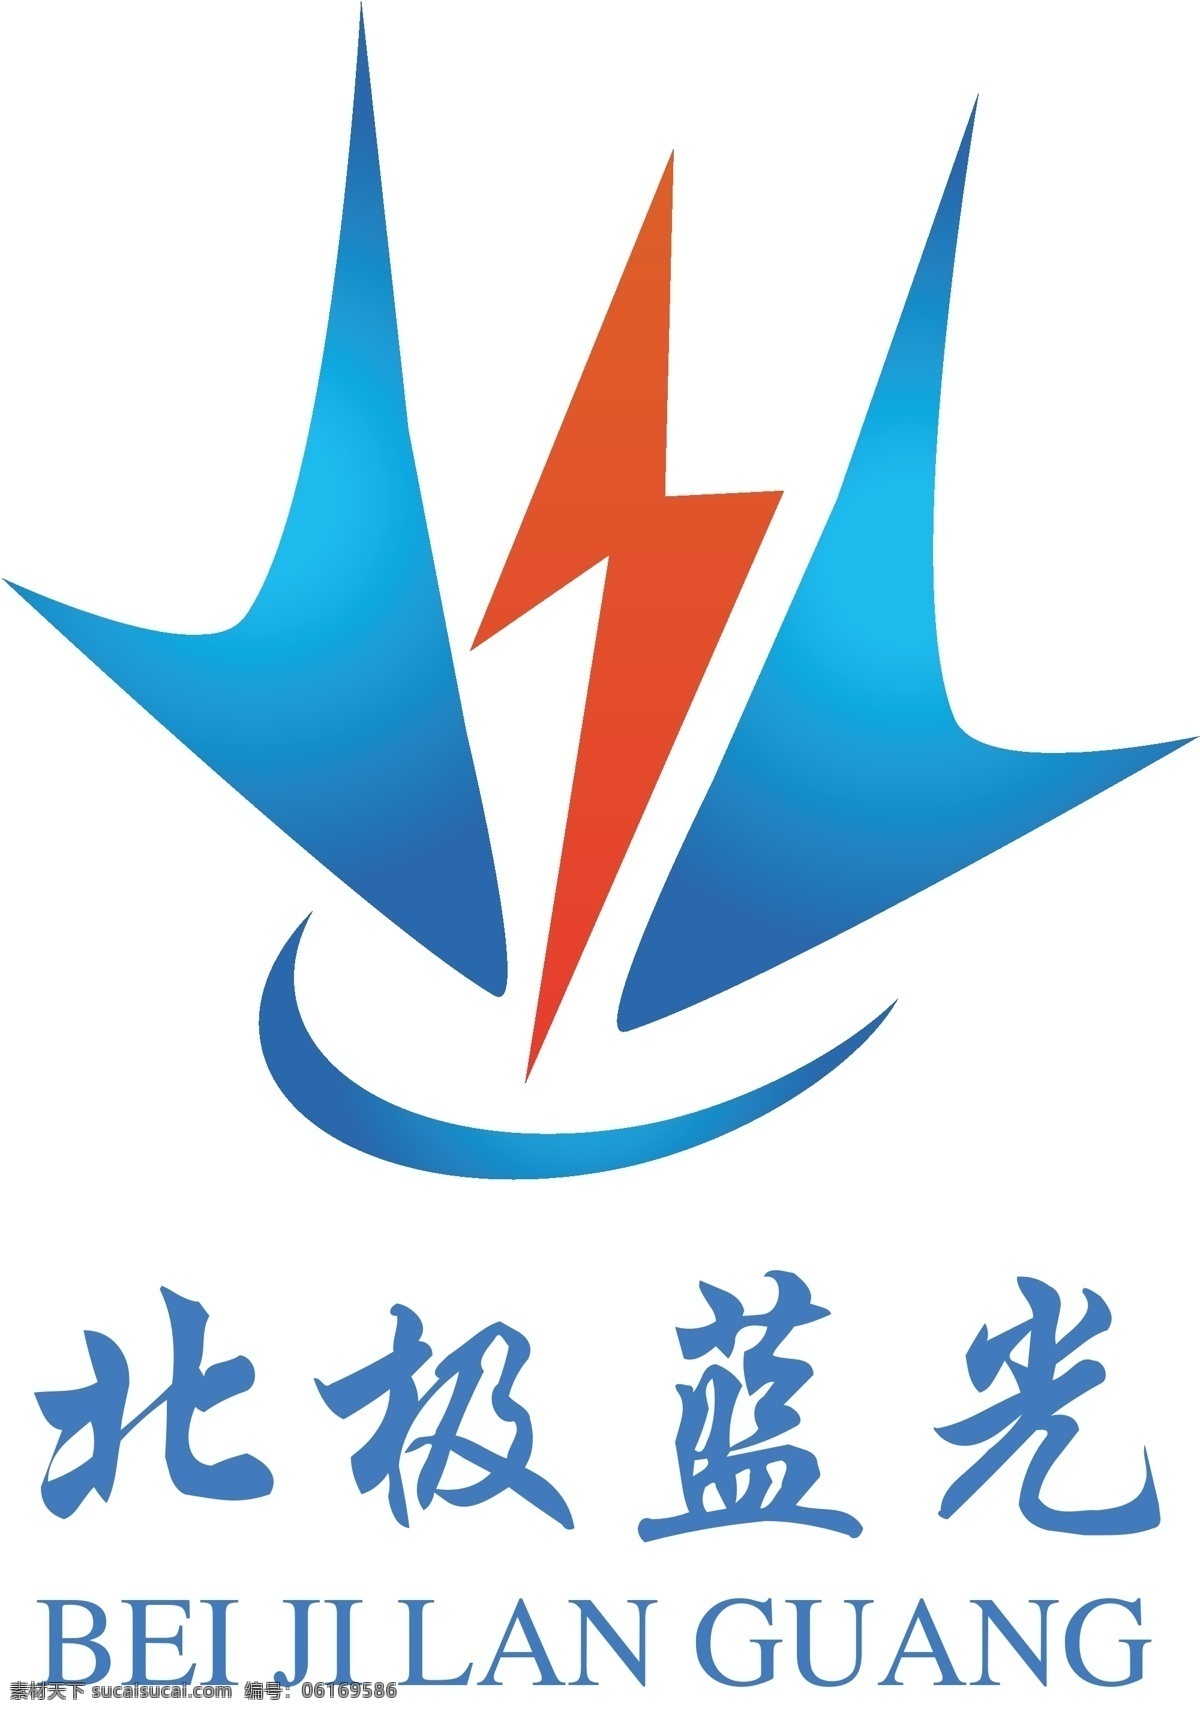 建筑 logo 蓝色logo 建筑logo 红色logo 雷 电 防护 标志图标 企业 标志